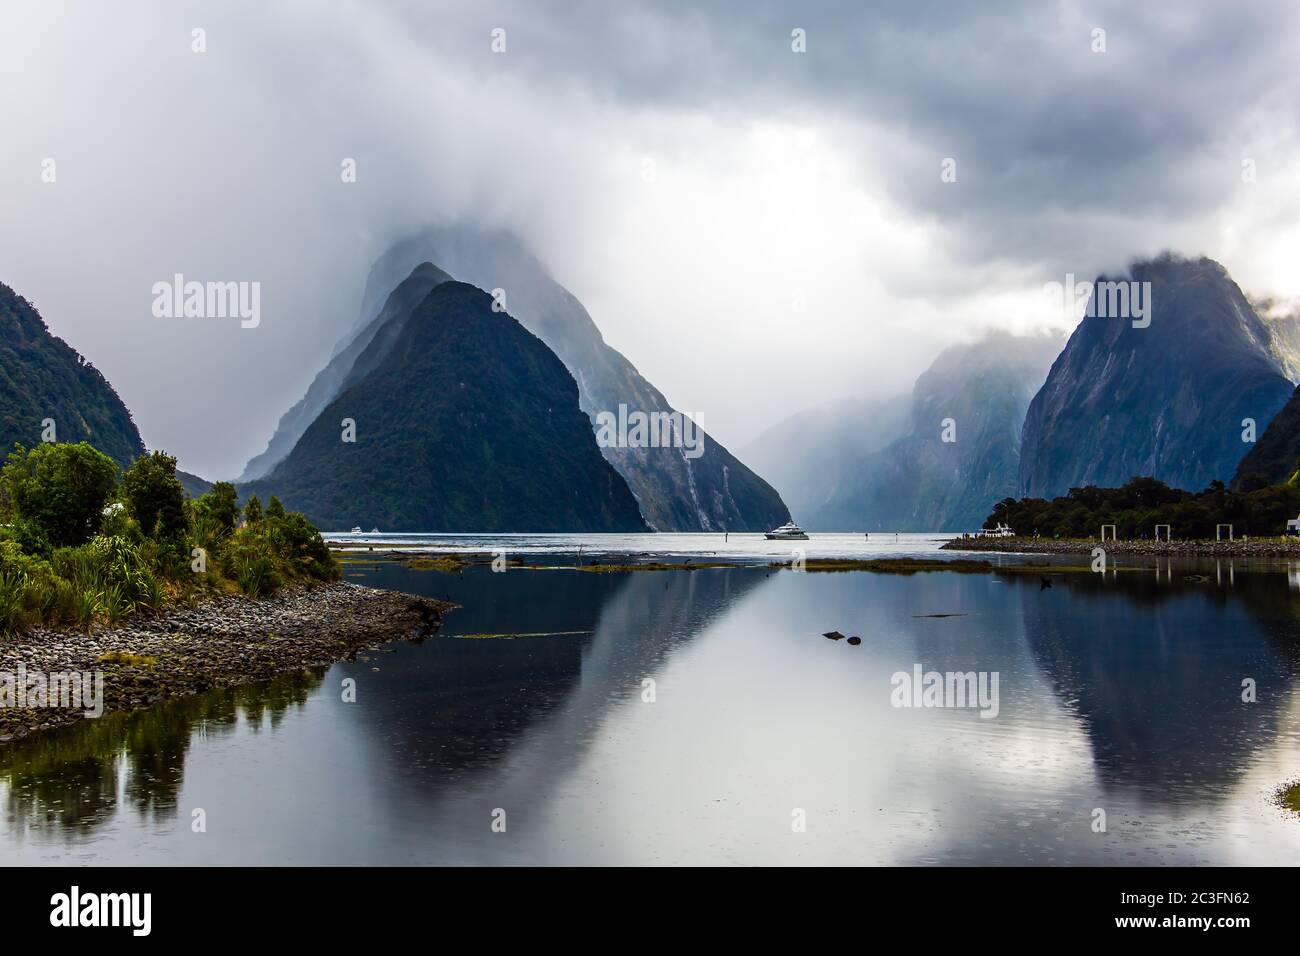 El agua de espejo-suave refleja las montañas Foto de stock